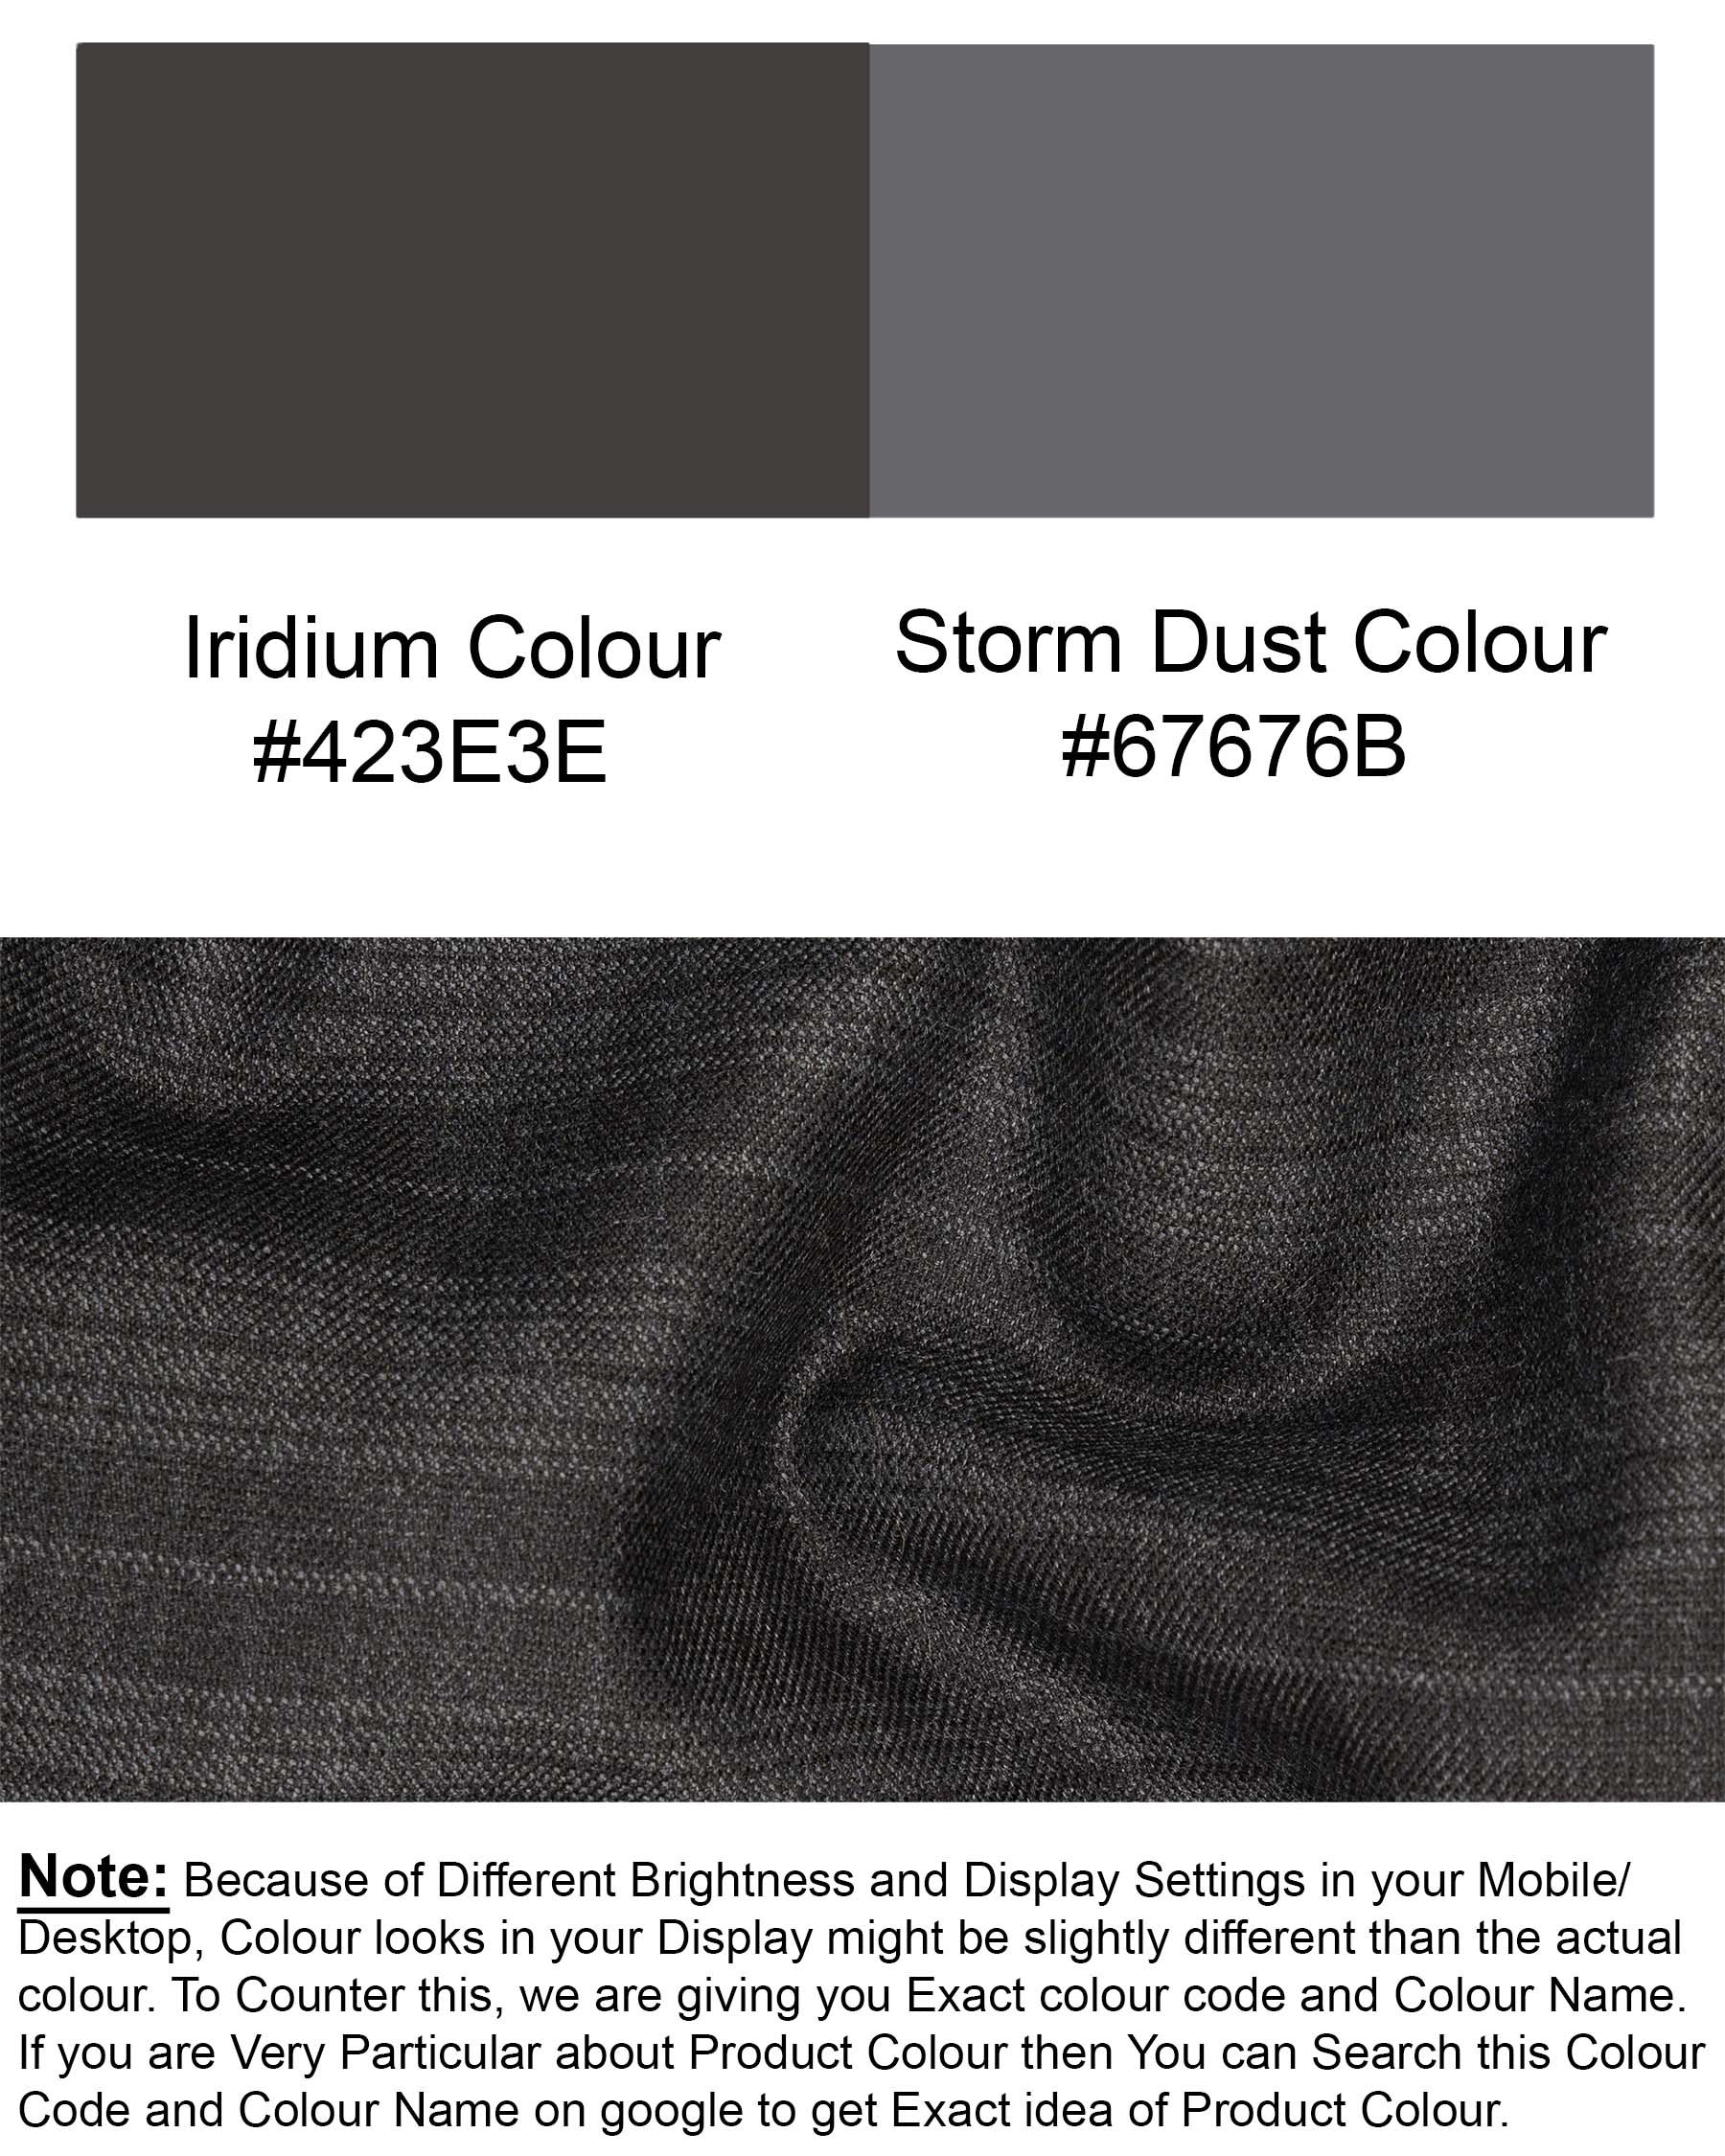 Iridium Grey Subtle Plaid Waistcoat V1782-36, V1782-38, V1782-40, V1782-42, V1782-44, V1782-46, V1782-48, V1782-50, V1782-52, V1782-54, V1782-56, V1782-58, V1782-60